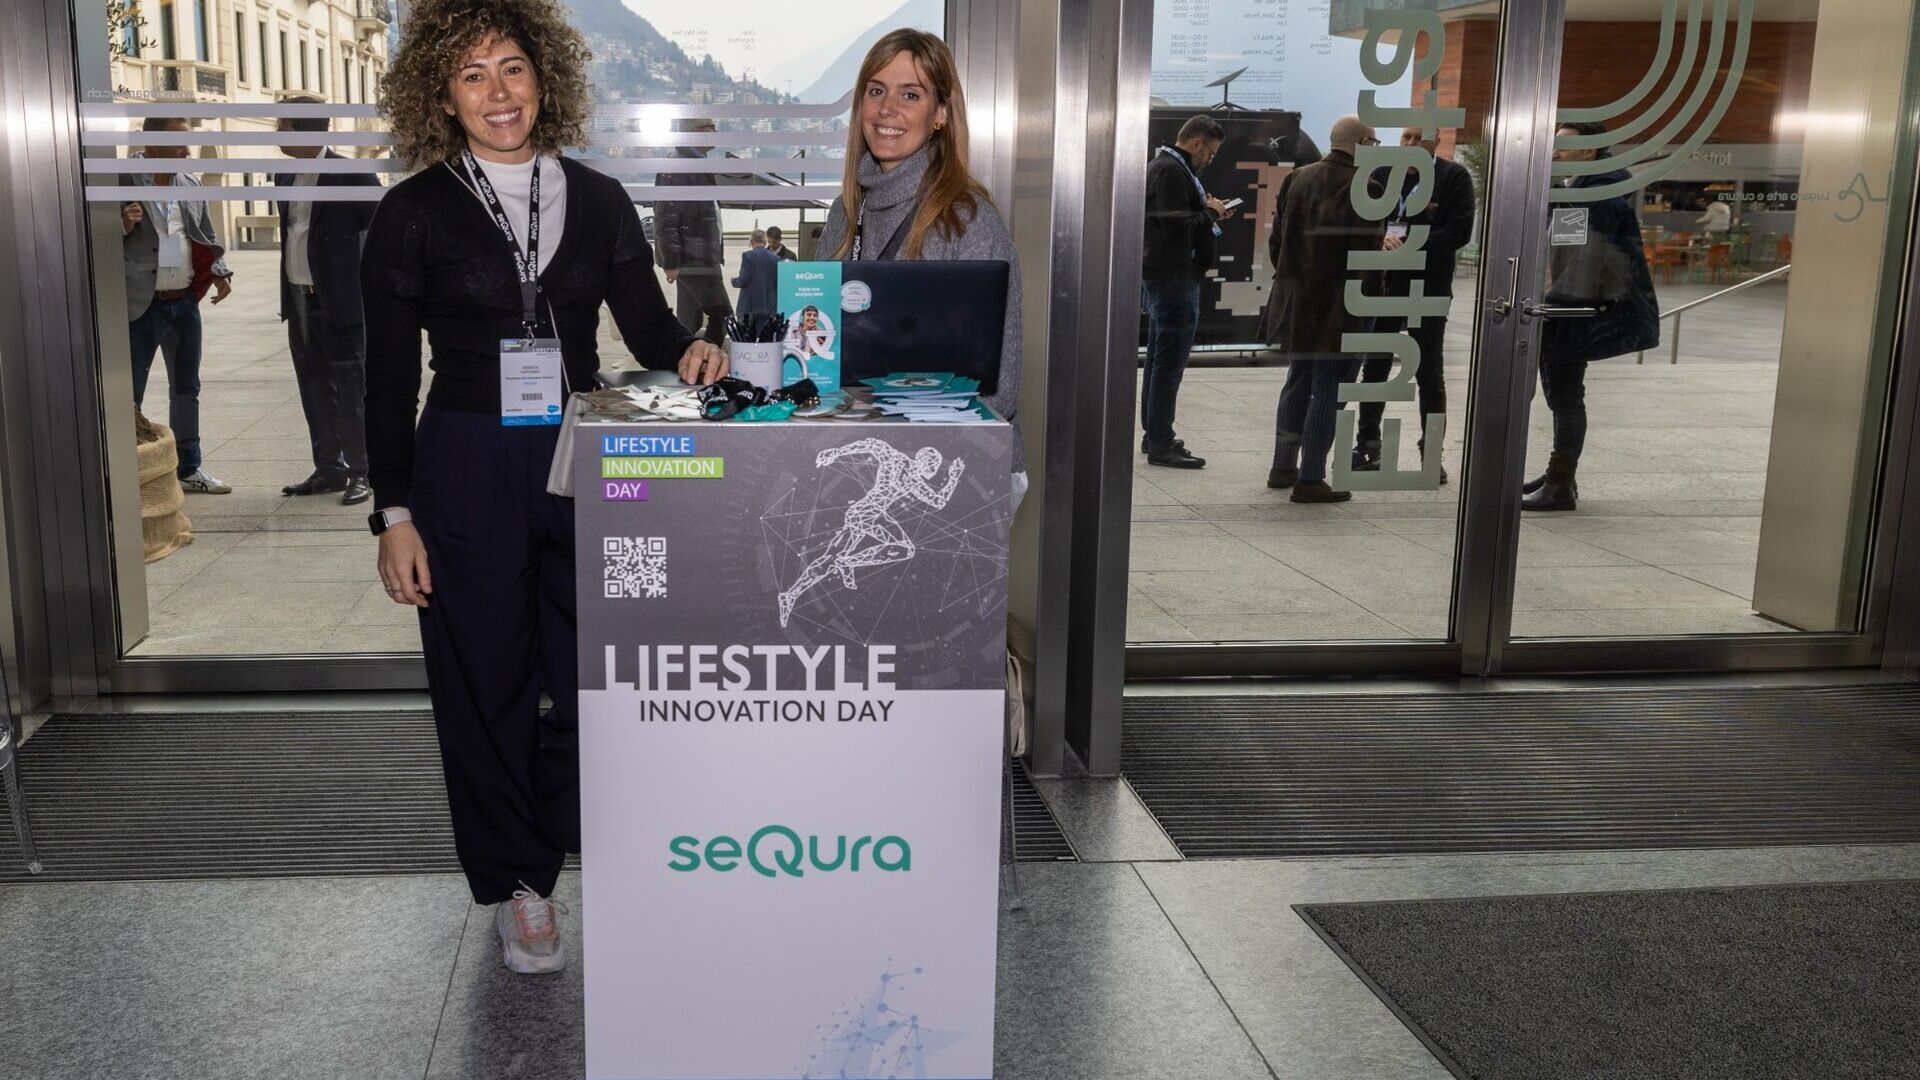 Lifestyle Innovation Day: los stands del LAC en Lugano el 13 de marzo de 2023